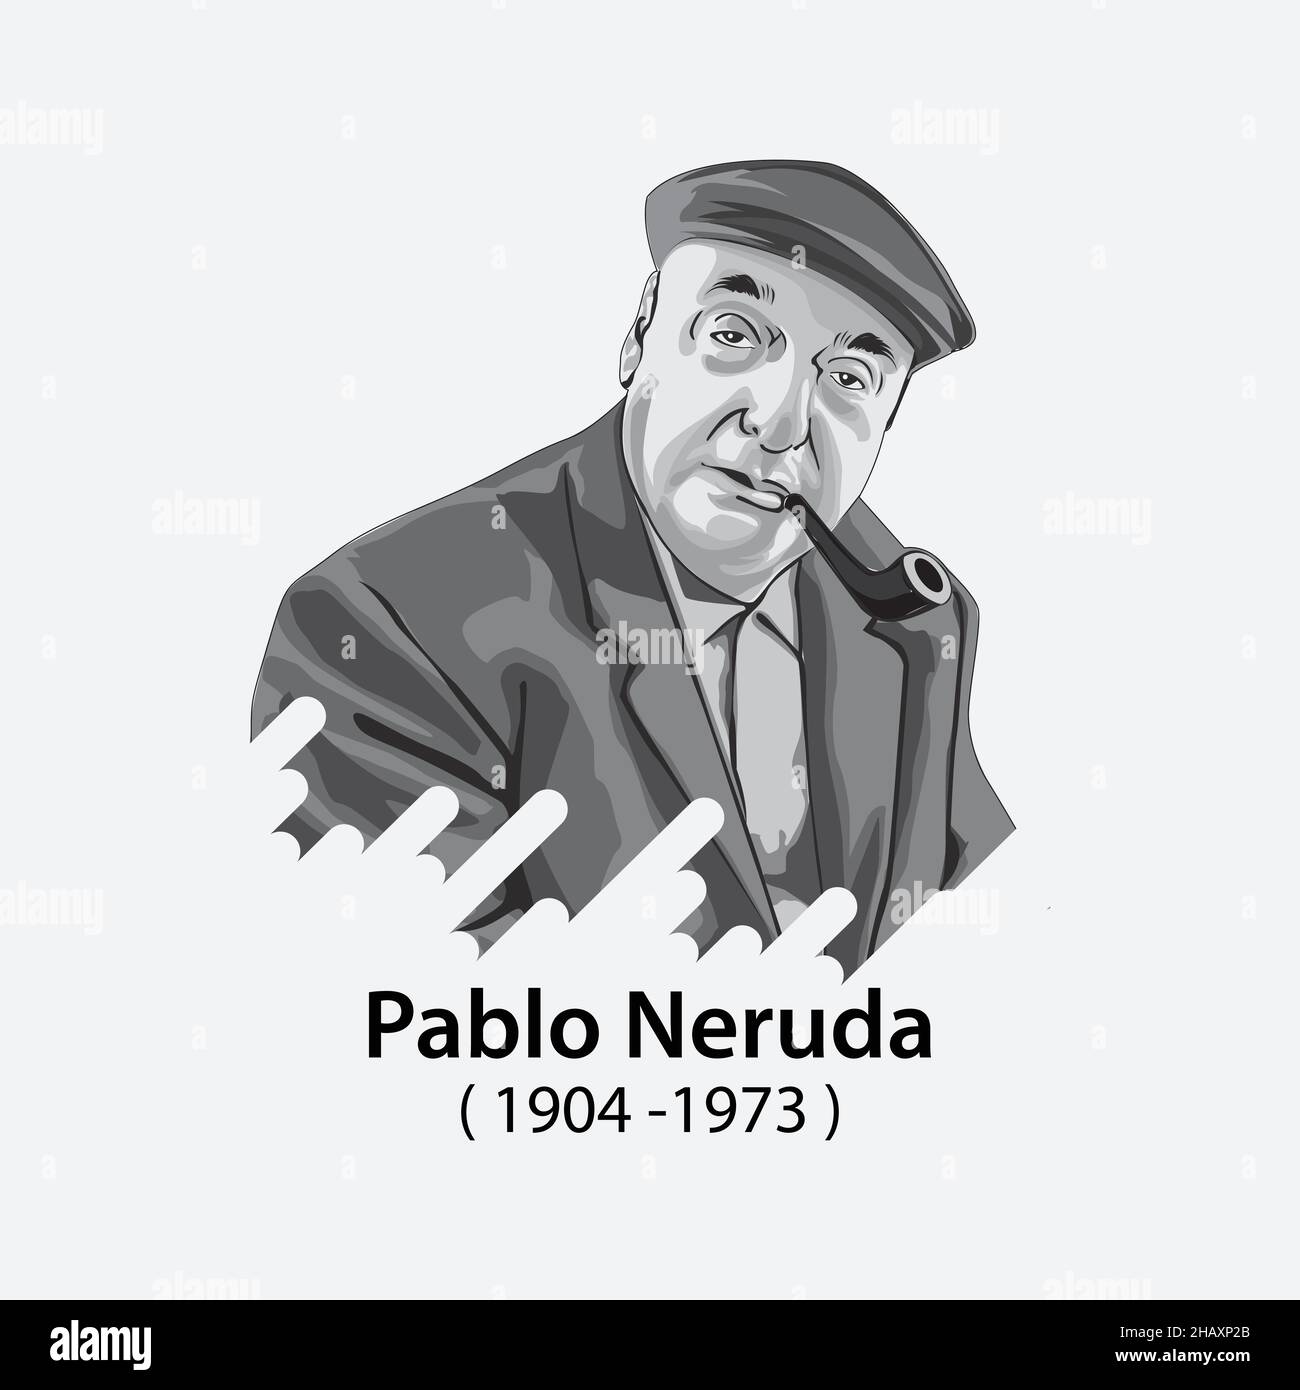 Pablo Neruda (1904-1973), chilenischer Dichter, Diplomat und Politiker 20 Liebesgedichte und ein Lied der Verzweiflung, er gewann den Nobelpreis für Literatur. Stock Vektor